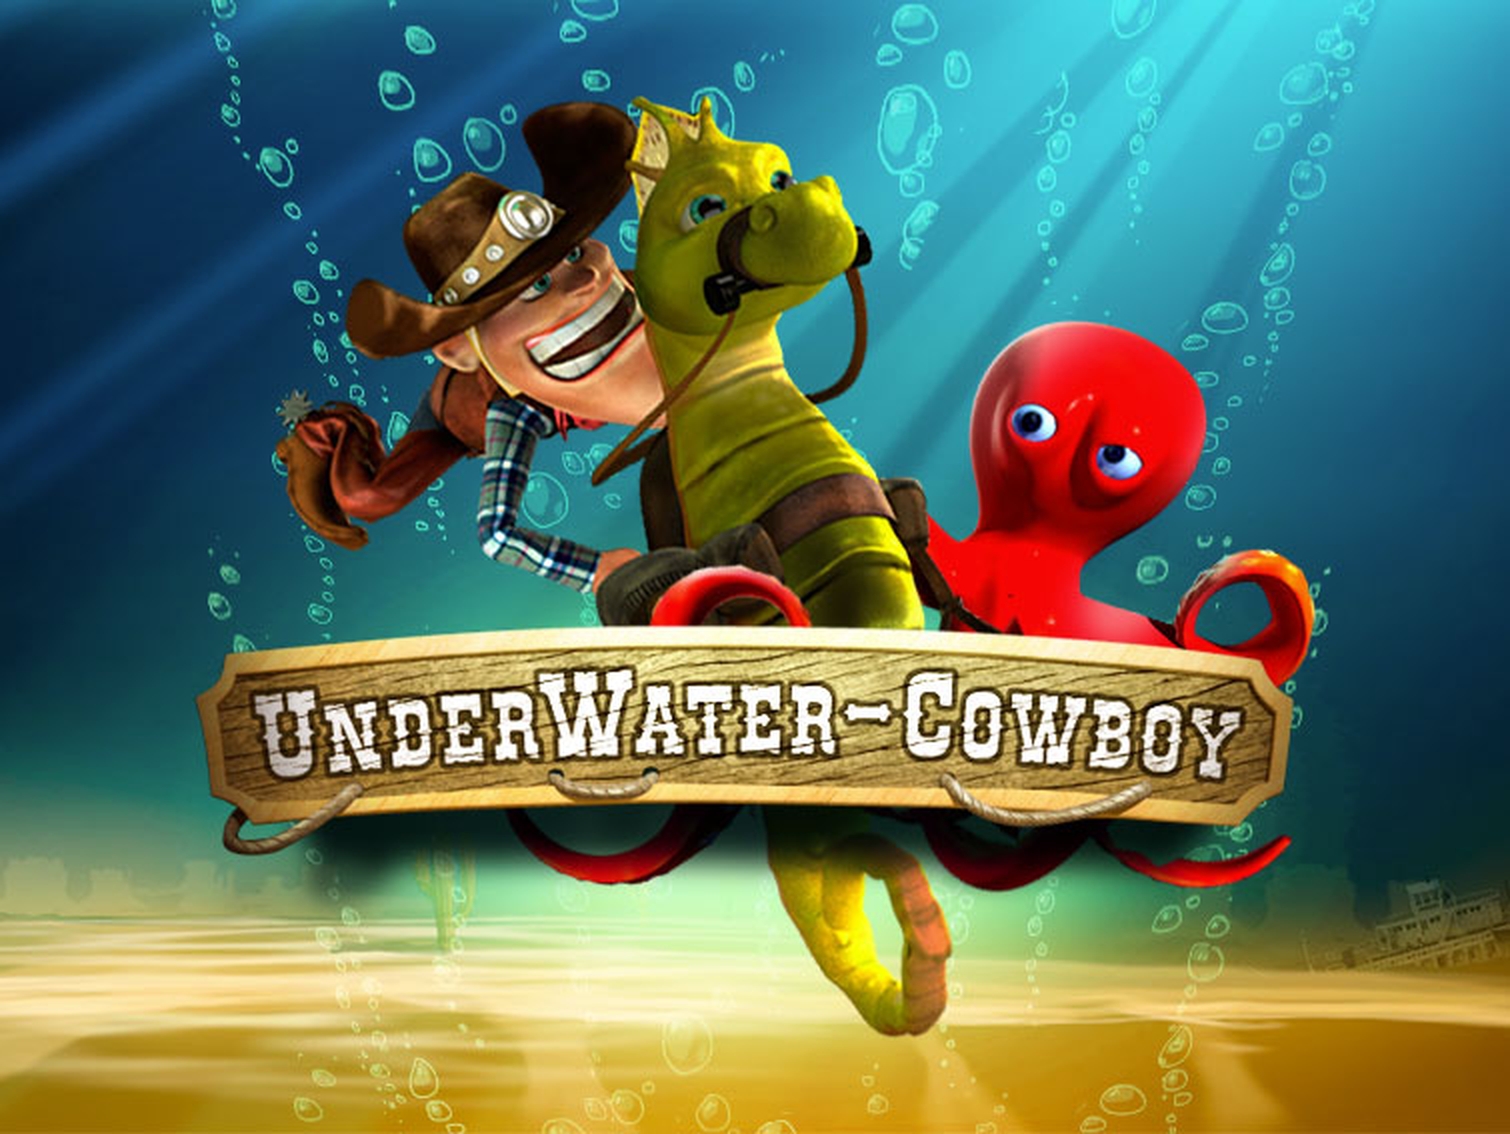 Underwater Cowboy demo